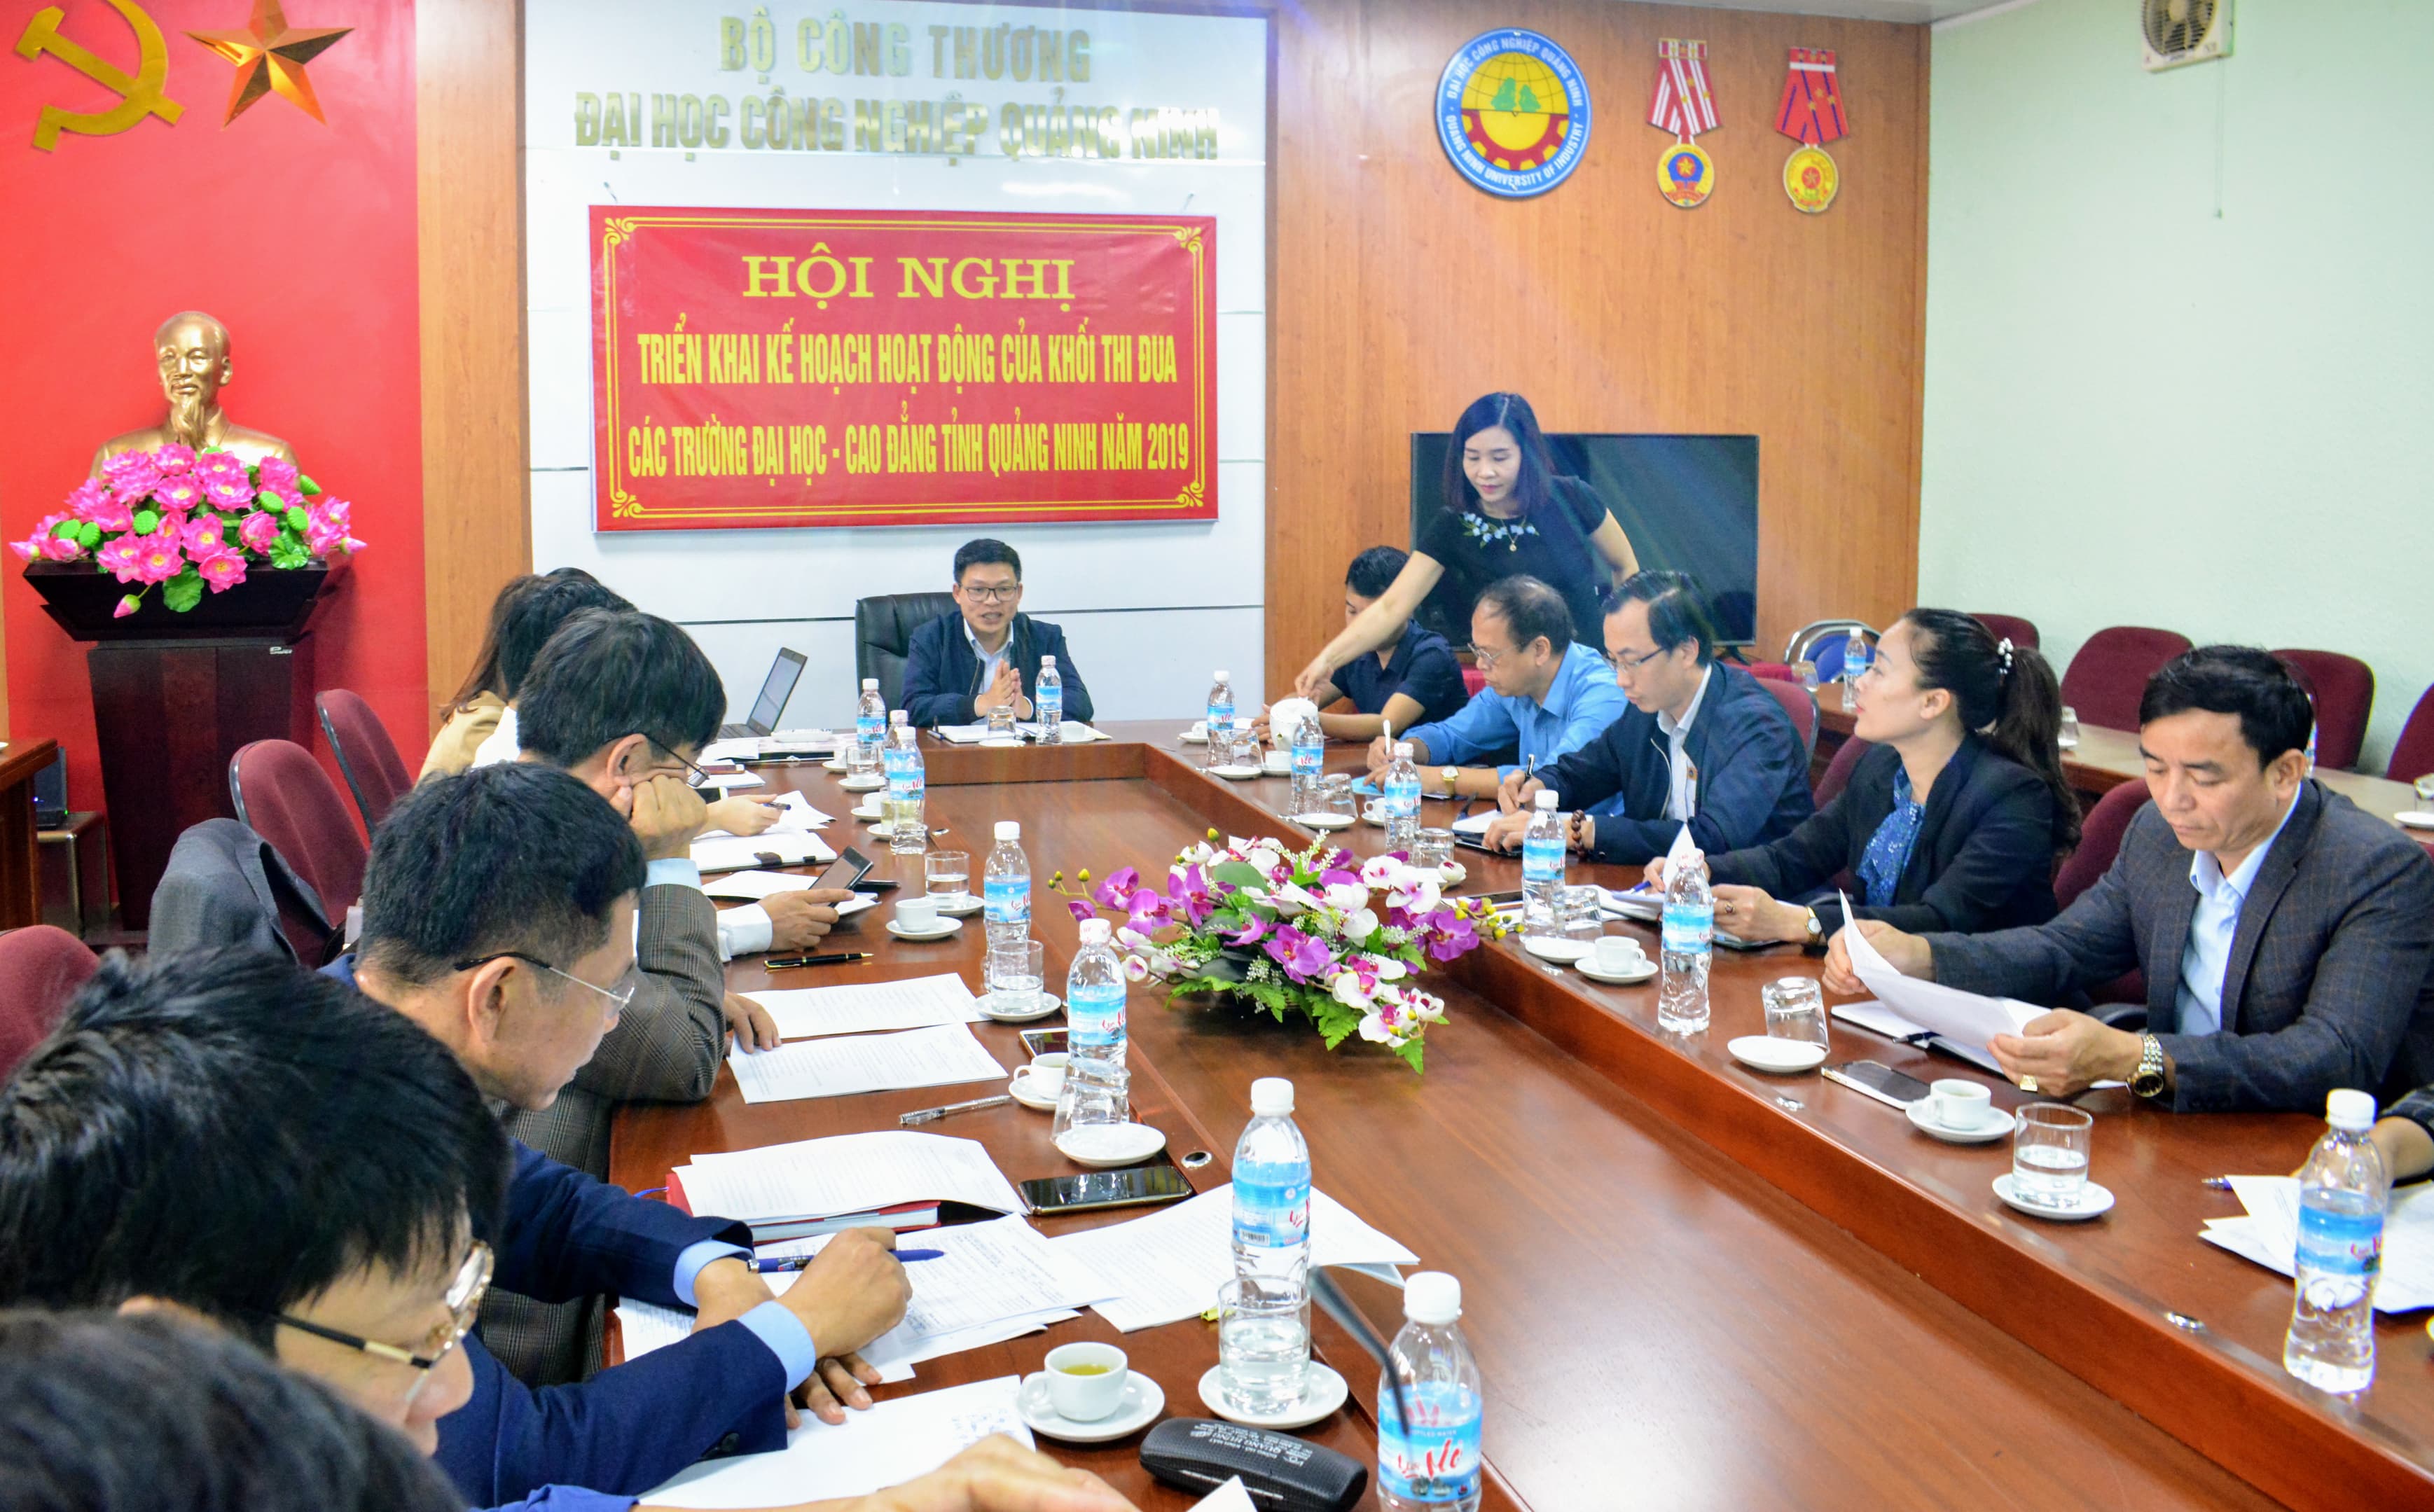 Hội nghị triển khai kế hoạch hoạt động của Khối thi đua các trường Đại học, Cao đẳng tỉnh Quảng Ninh năm 2019